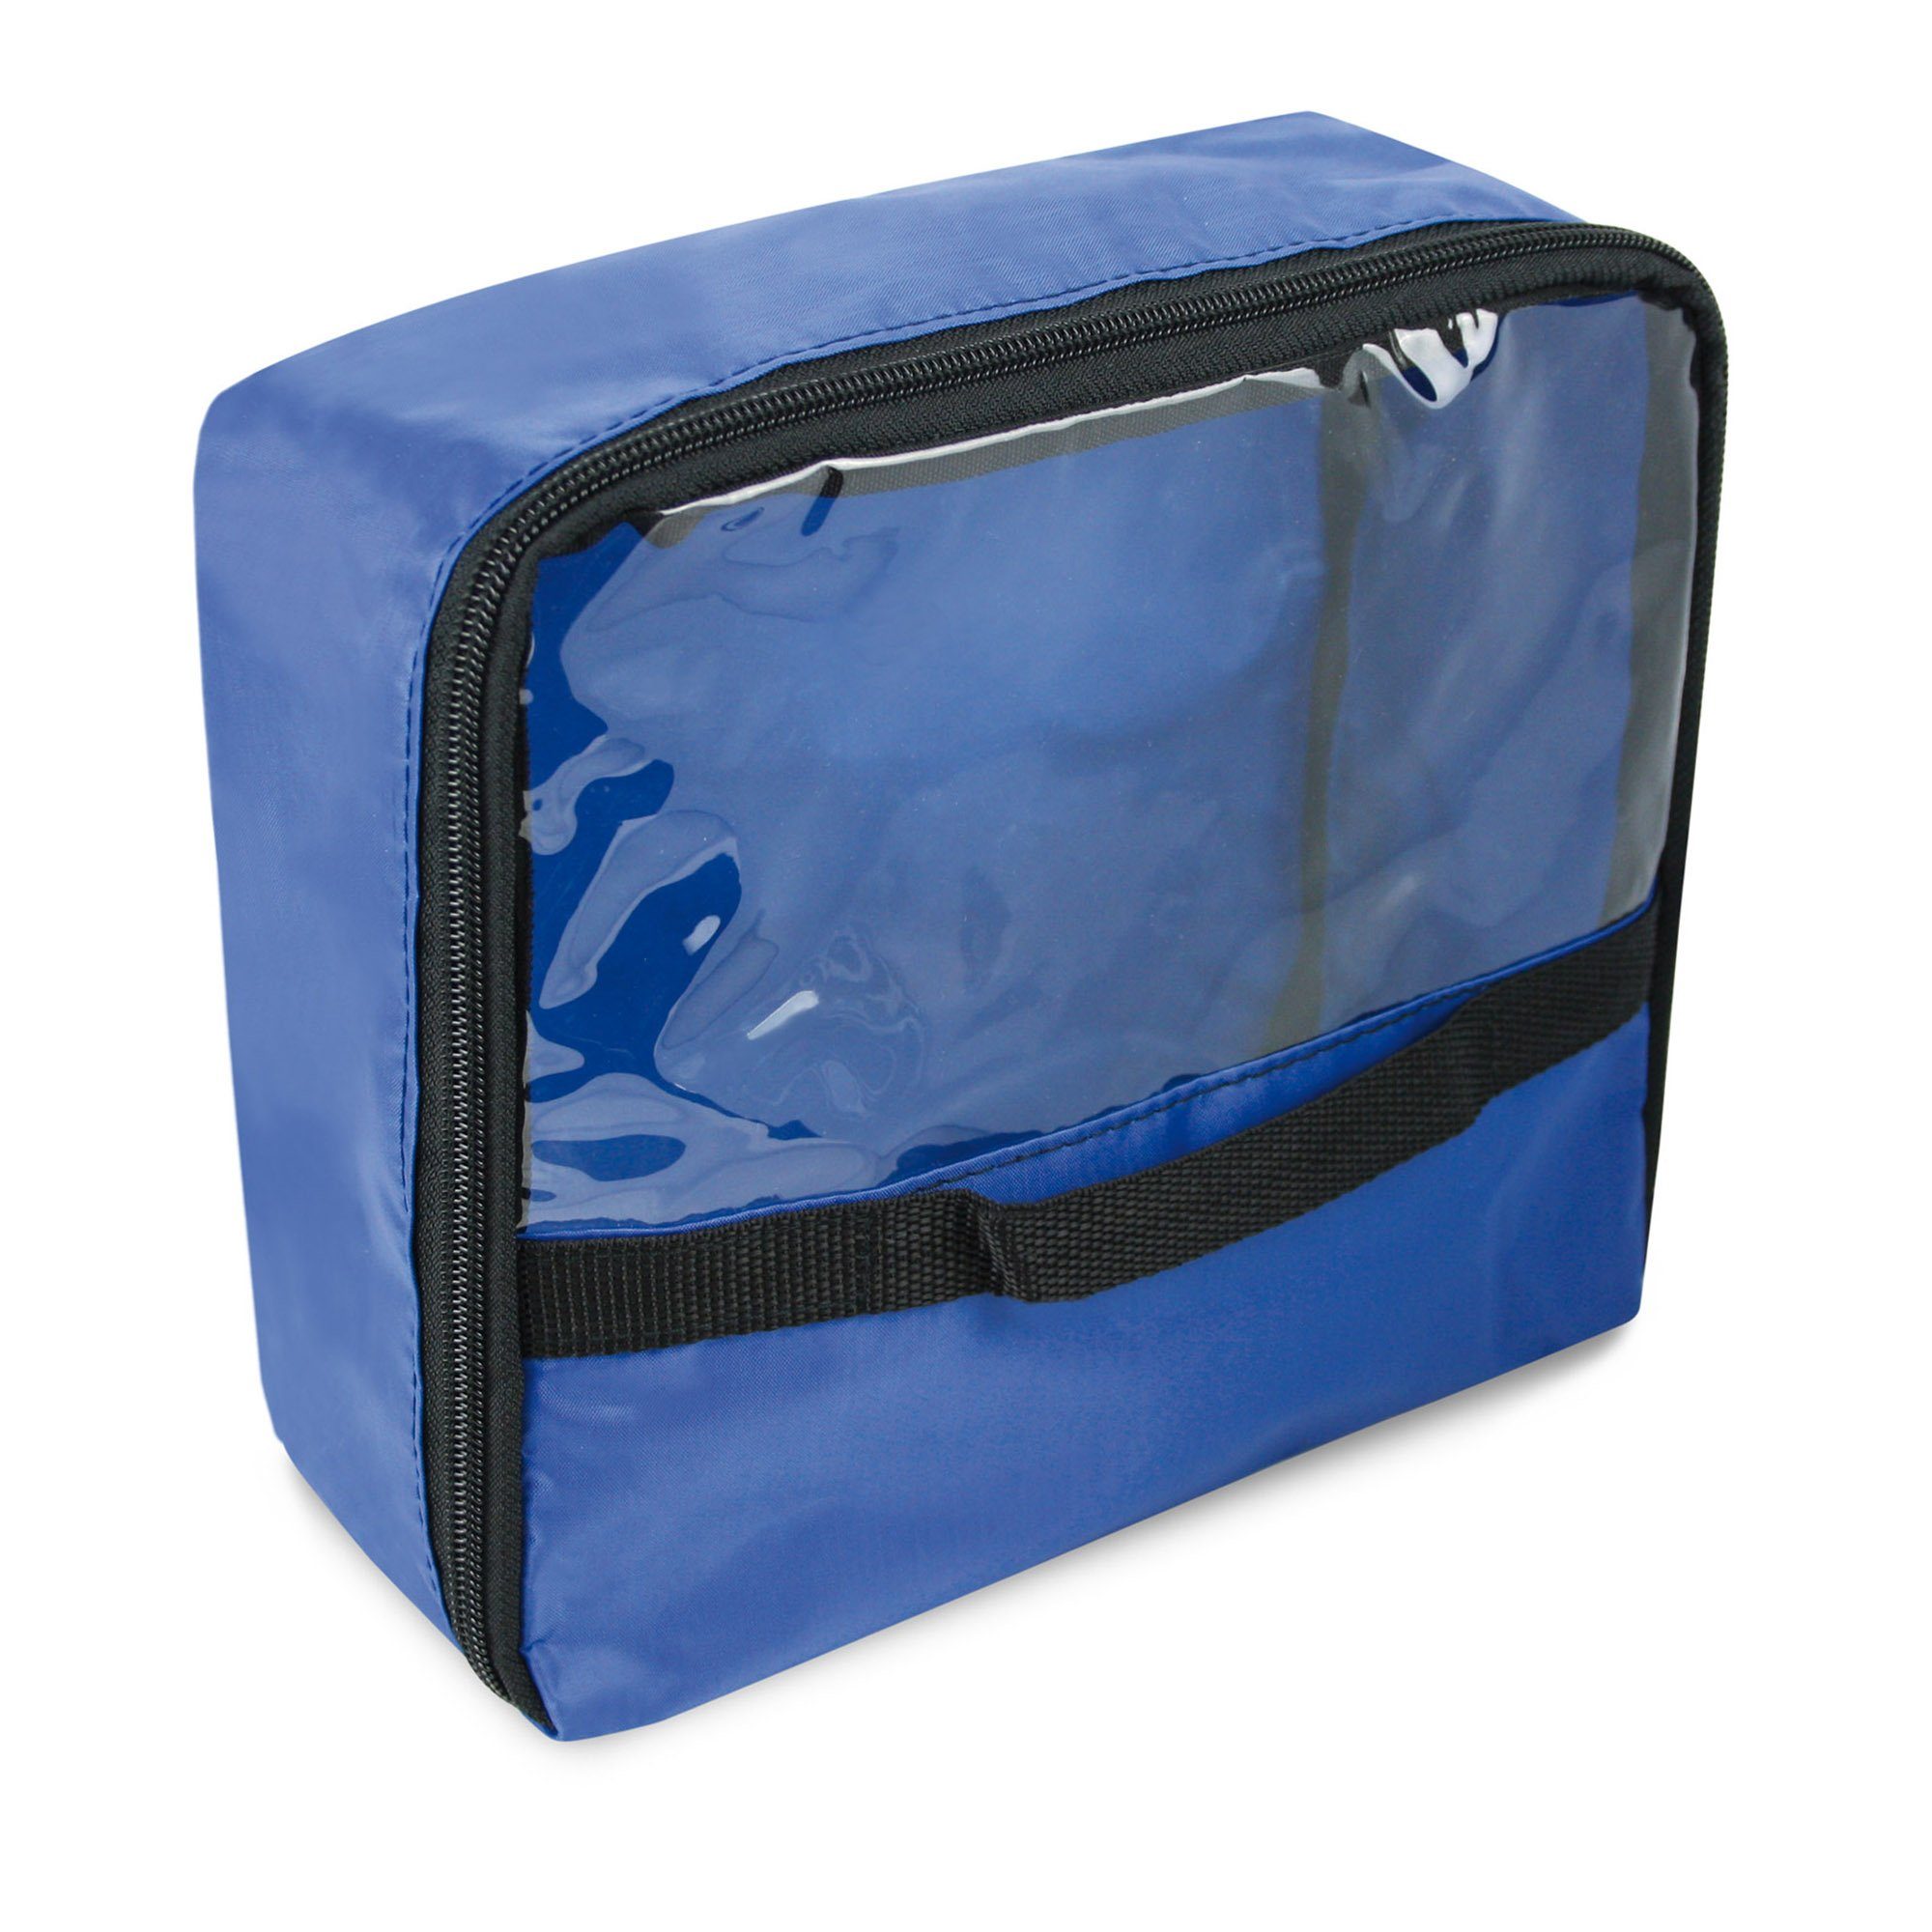 SANISMART Arzttasche Modultasche Blau Nylon 22 x 20 x 10 cm